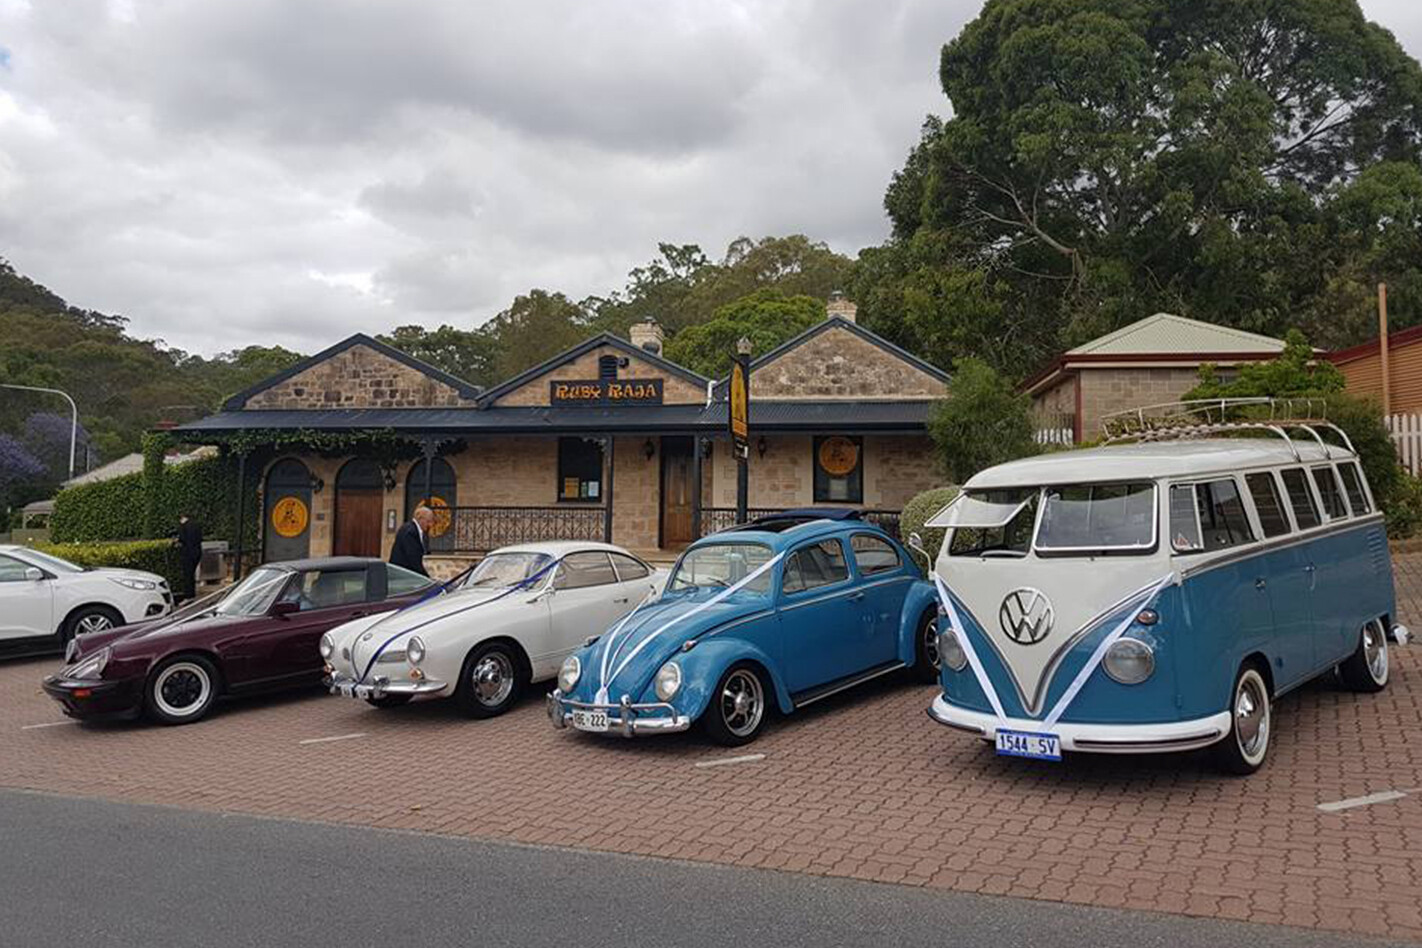 Paul O'Loughlin's wedding cars